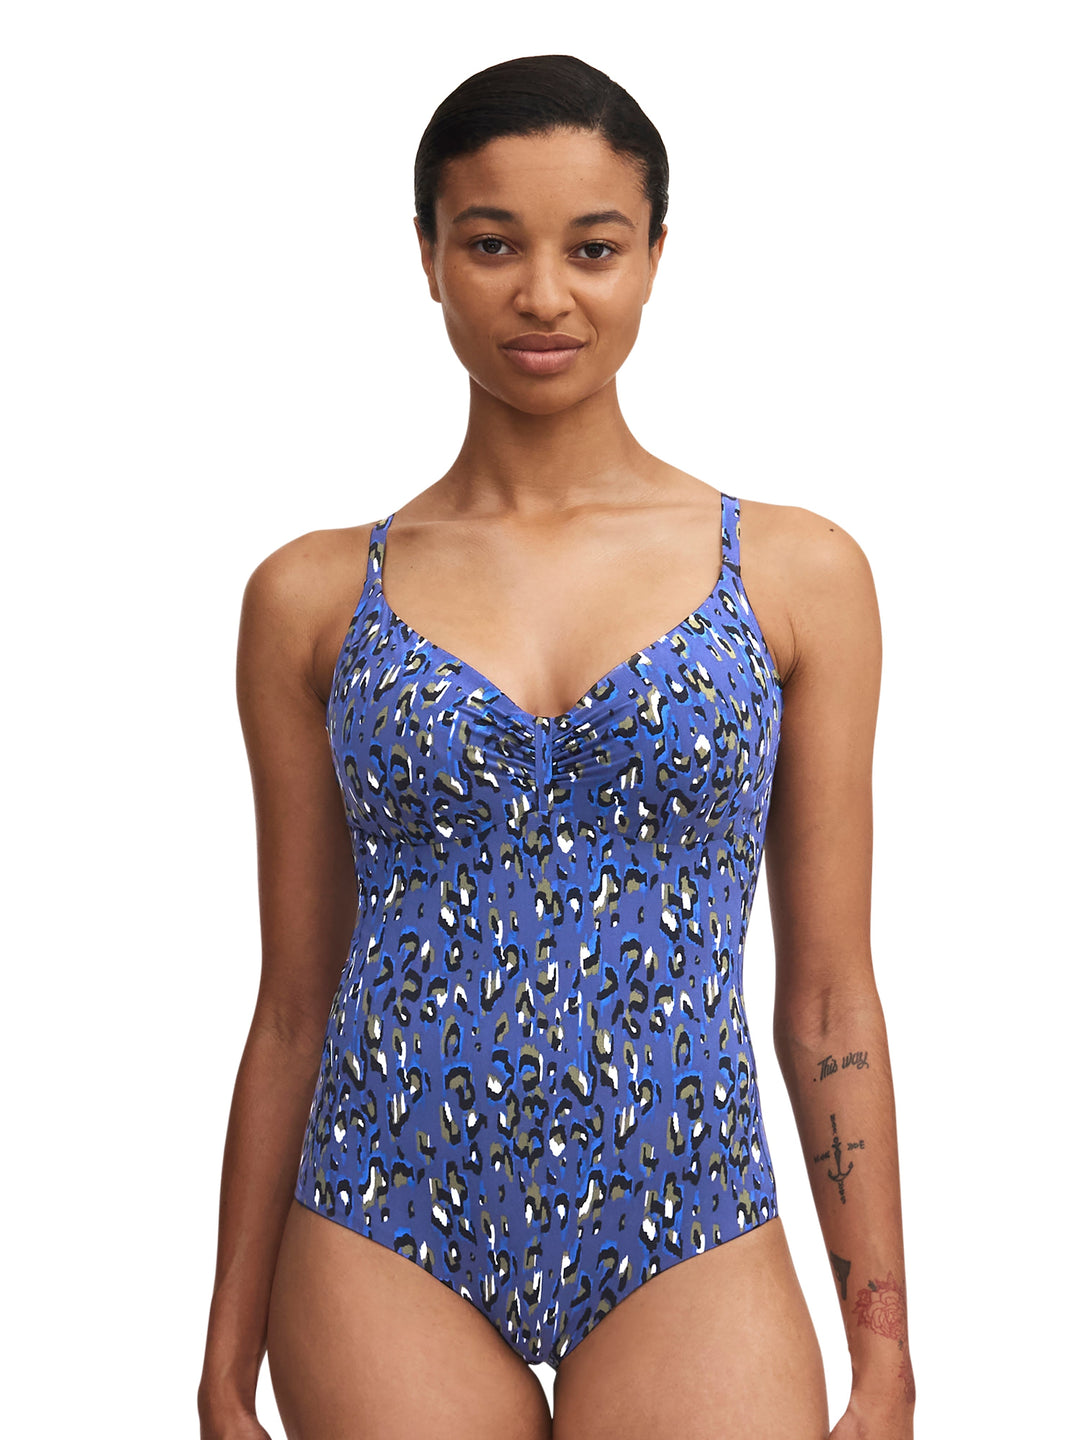 Chantelle Swimwear Eos Costume da bagno con ferretto coprente - Costume da bagno a coppa intera leopardato blu Chantelle